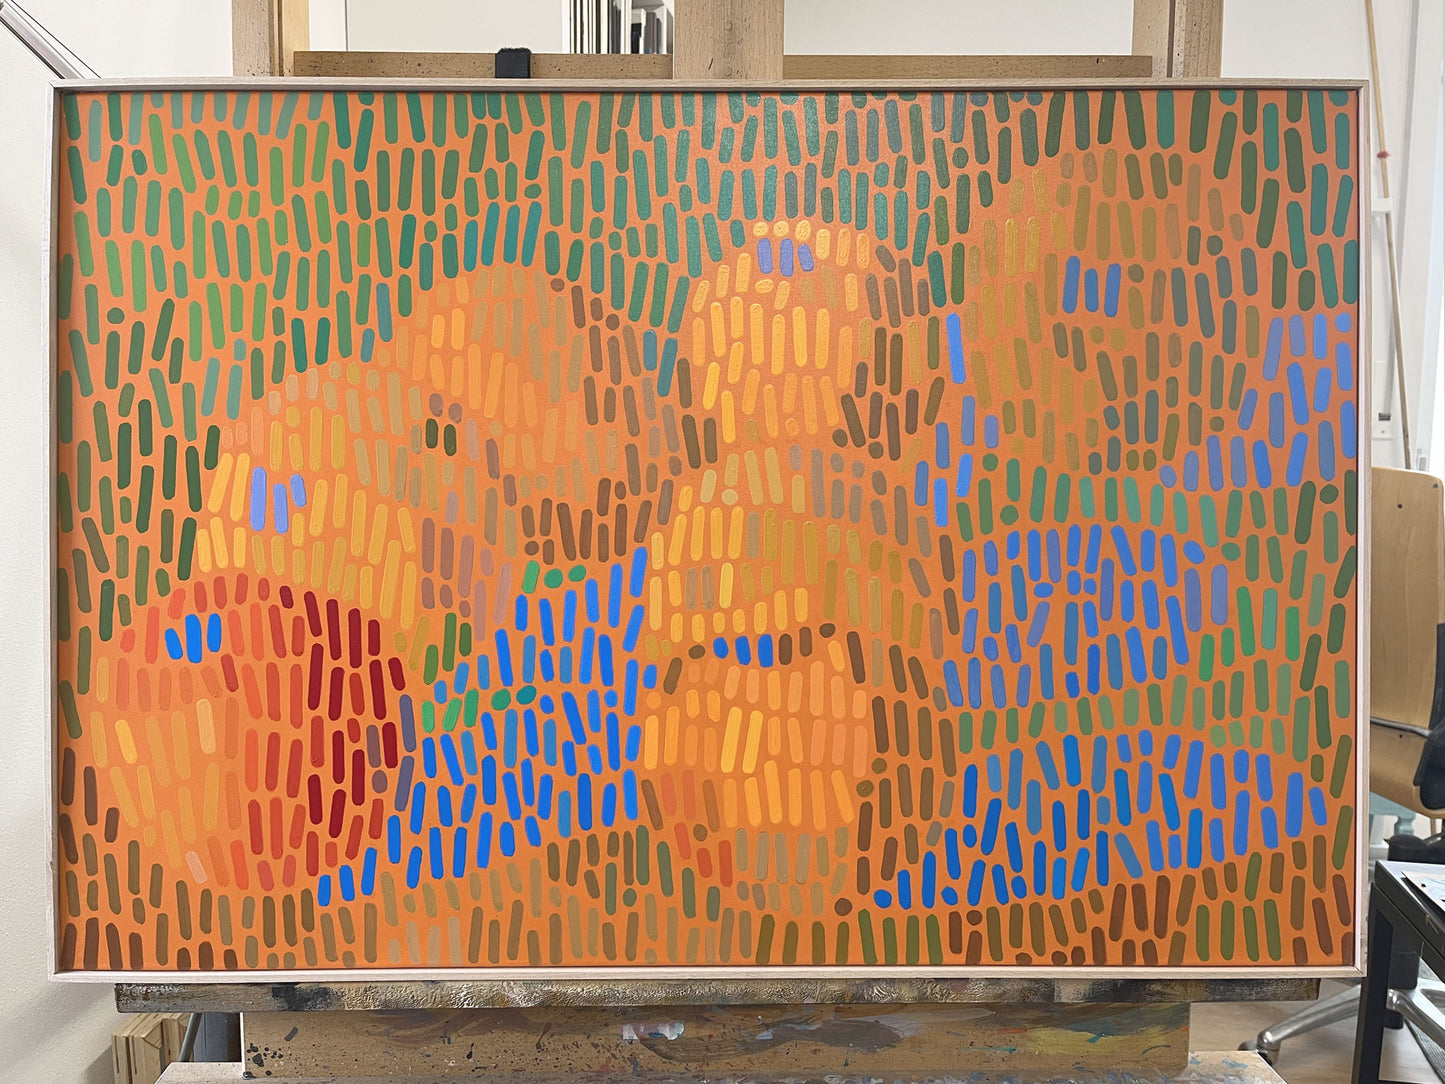 Pauls Äpfel 6, Unikat, Malerei, handgemaltes Einzelstück, 90 x 60 cm, mit Rahmenleiste